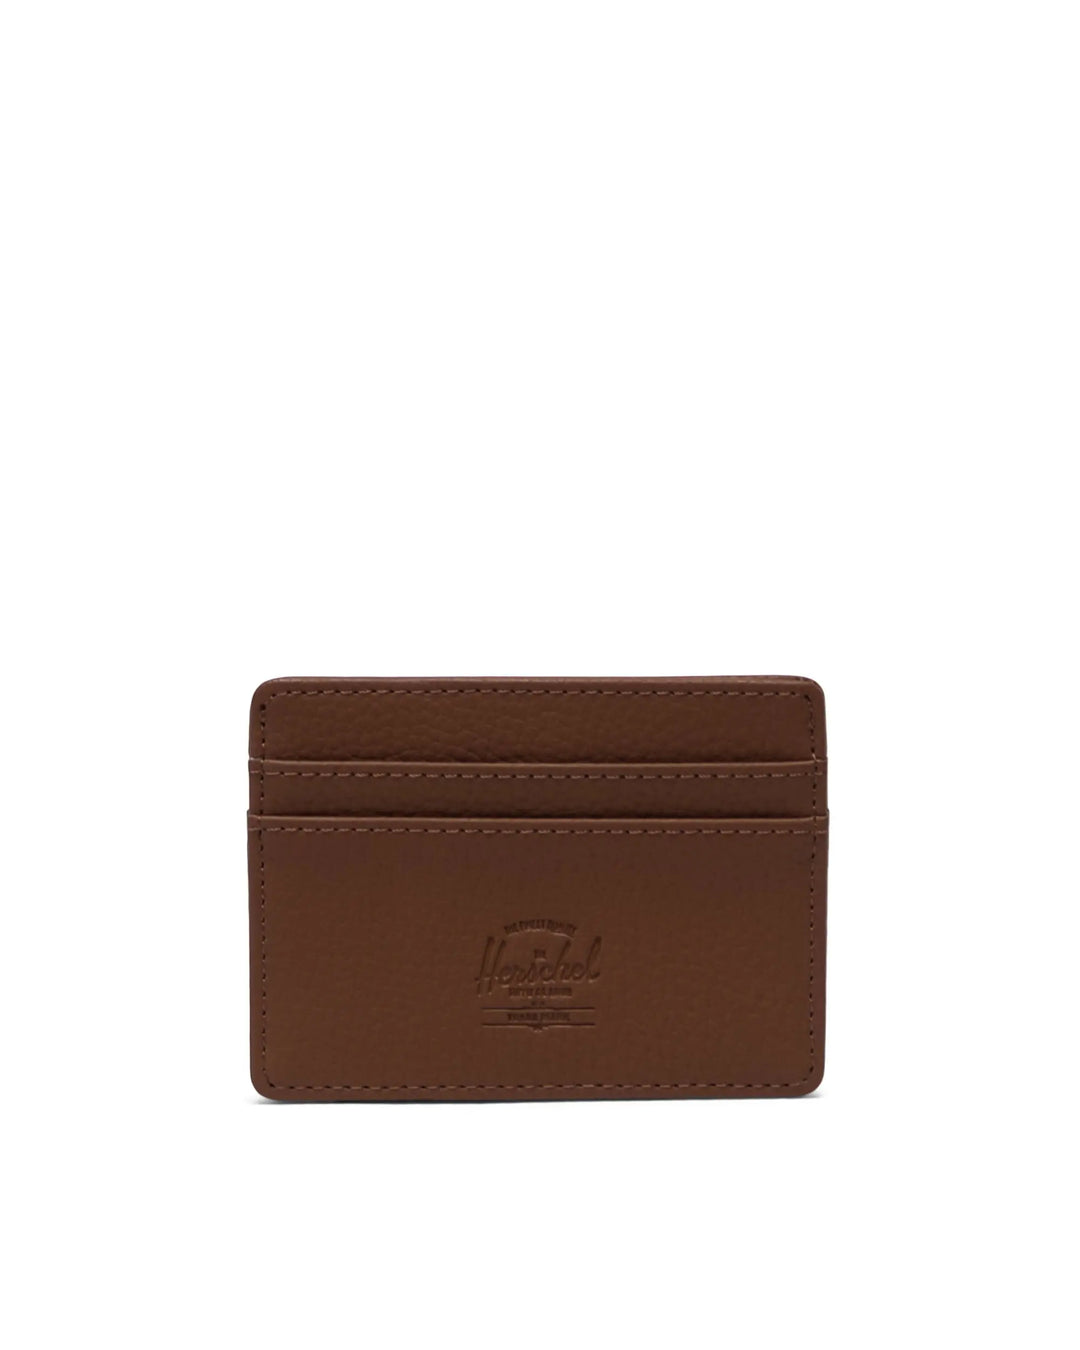 Herschel Supply Co Charlie Cardholder Wallet Vegan Leather - Saddle Brown - Sun Diego Boardshop